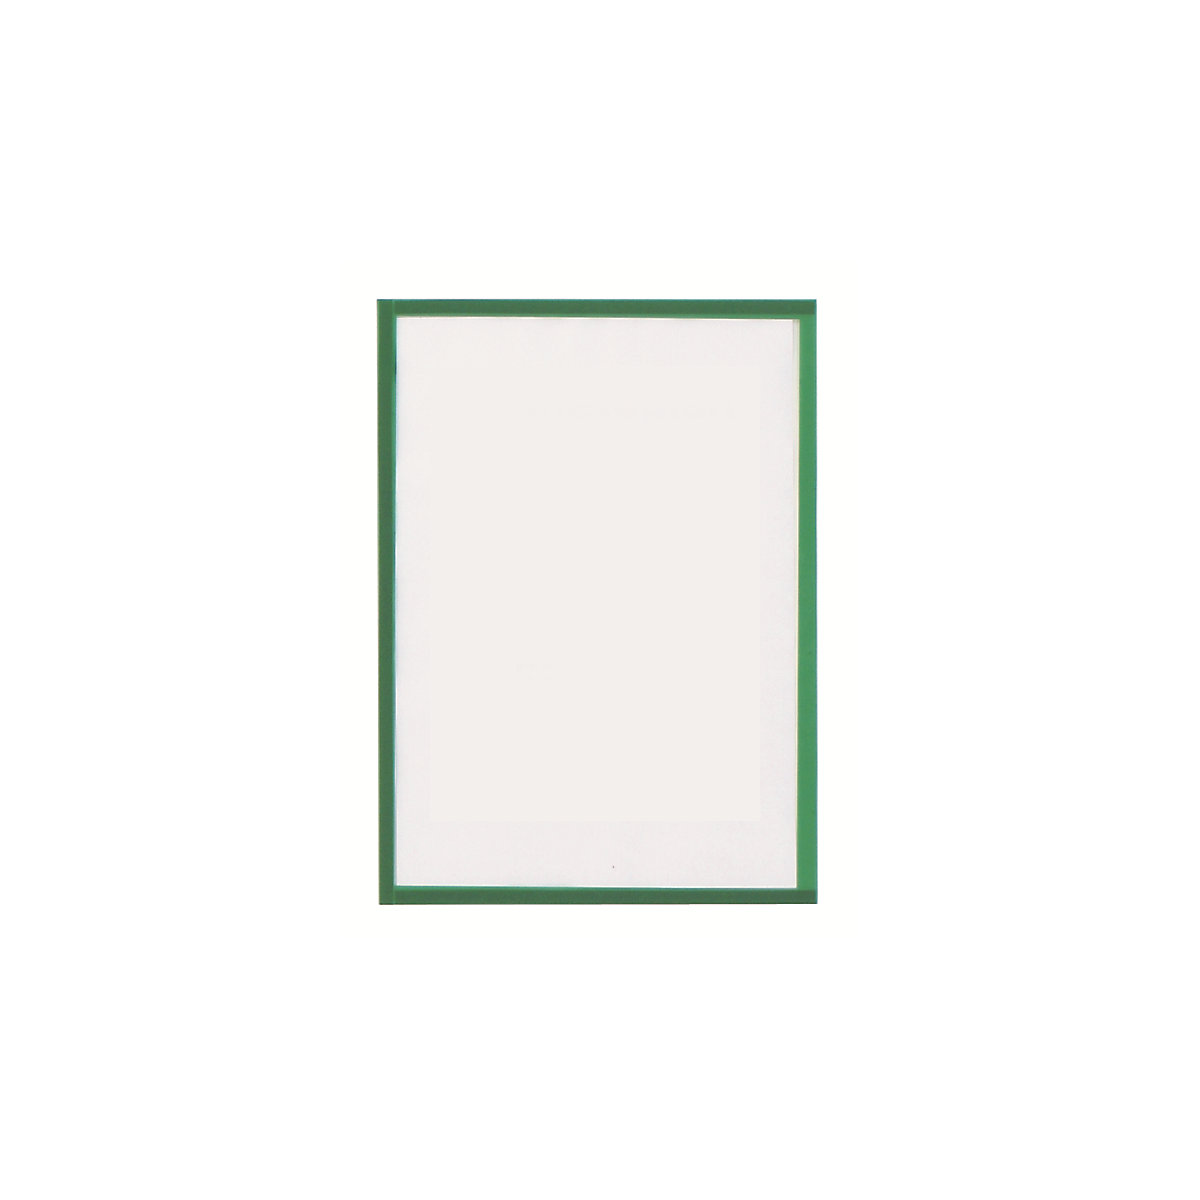 magnetofix vision panel – magnetoplan, format A3, pack of 5, green frame-8